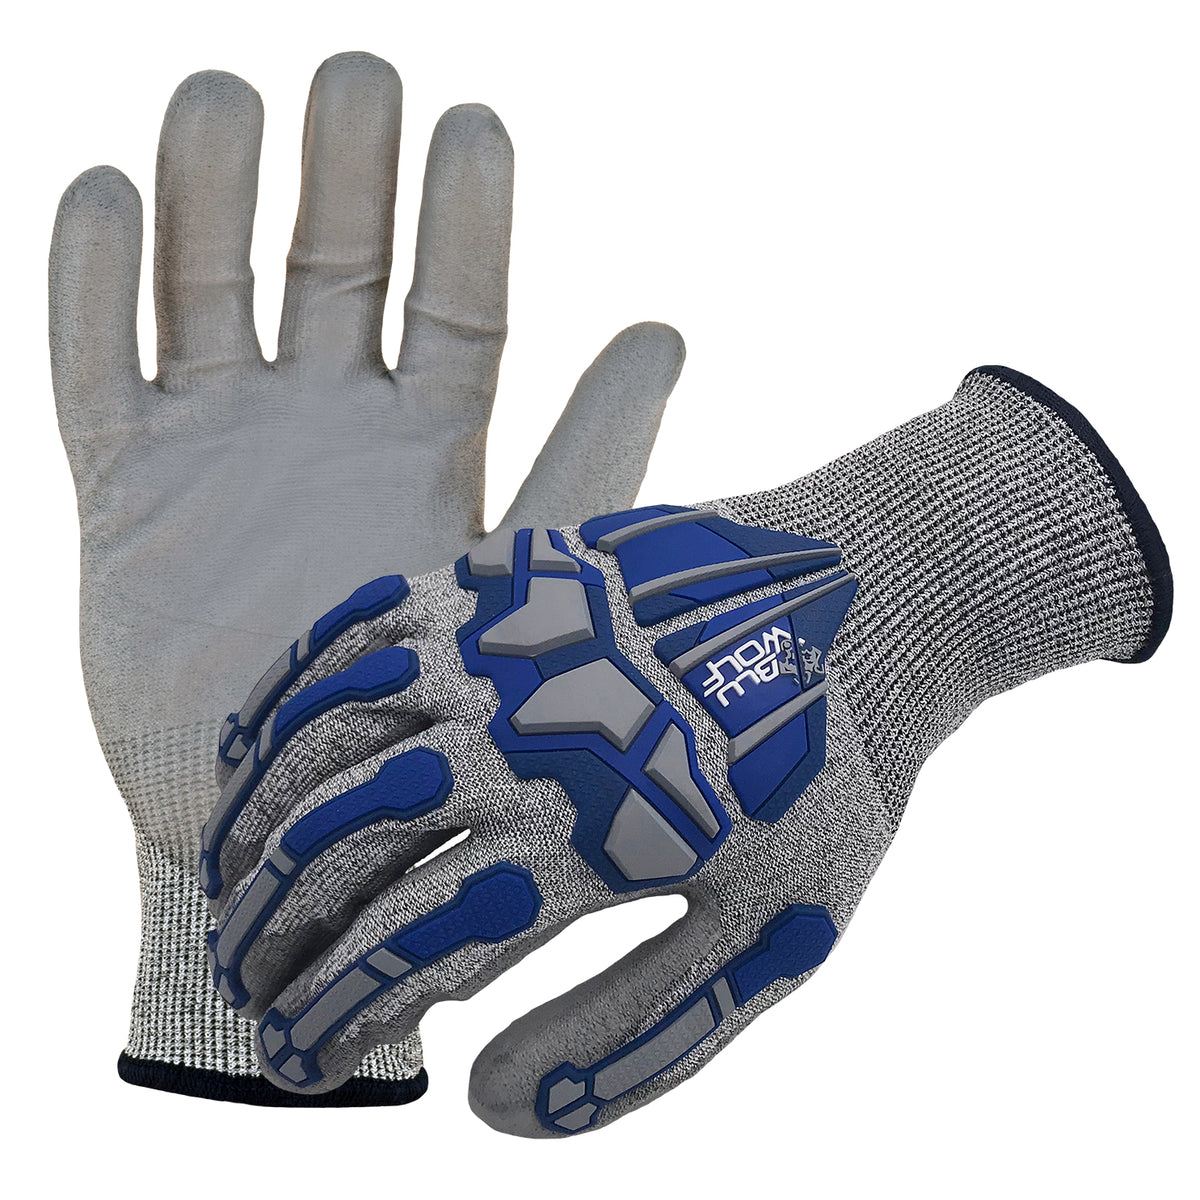 Hyper Tough HPPE ANSI A4 Anti Cut PU Coated Work Gloves, Full Fingers, Men's Medium Size